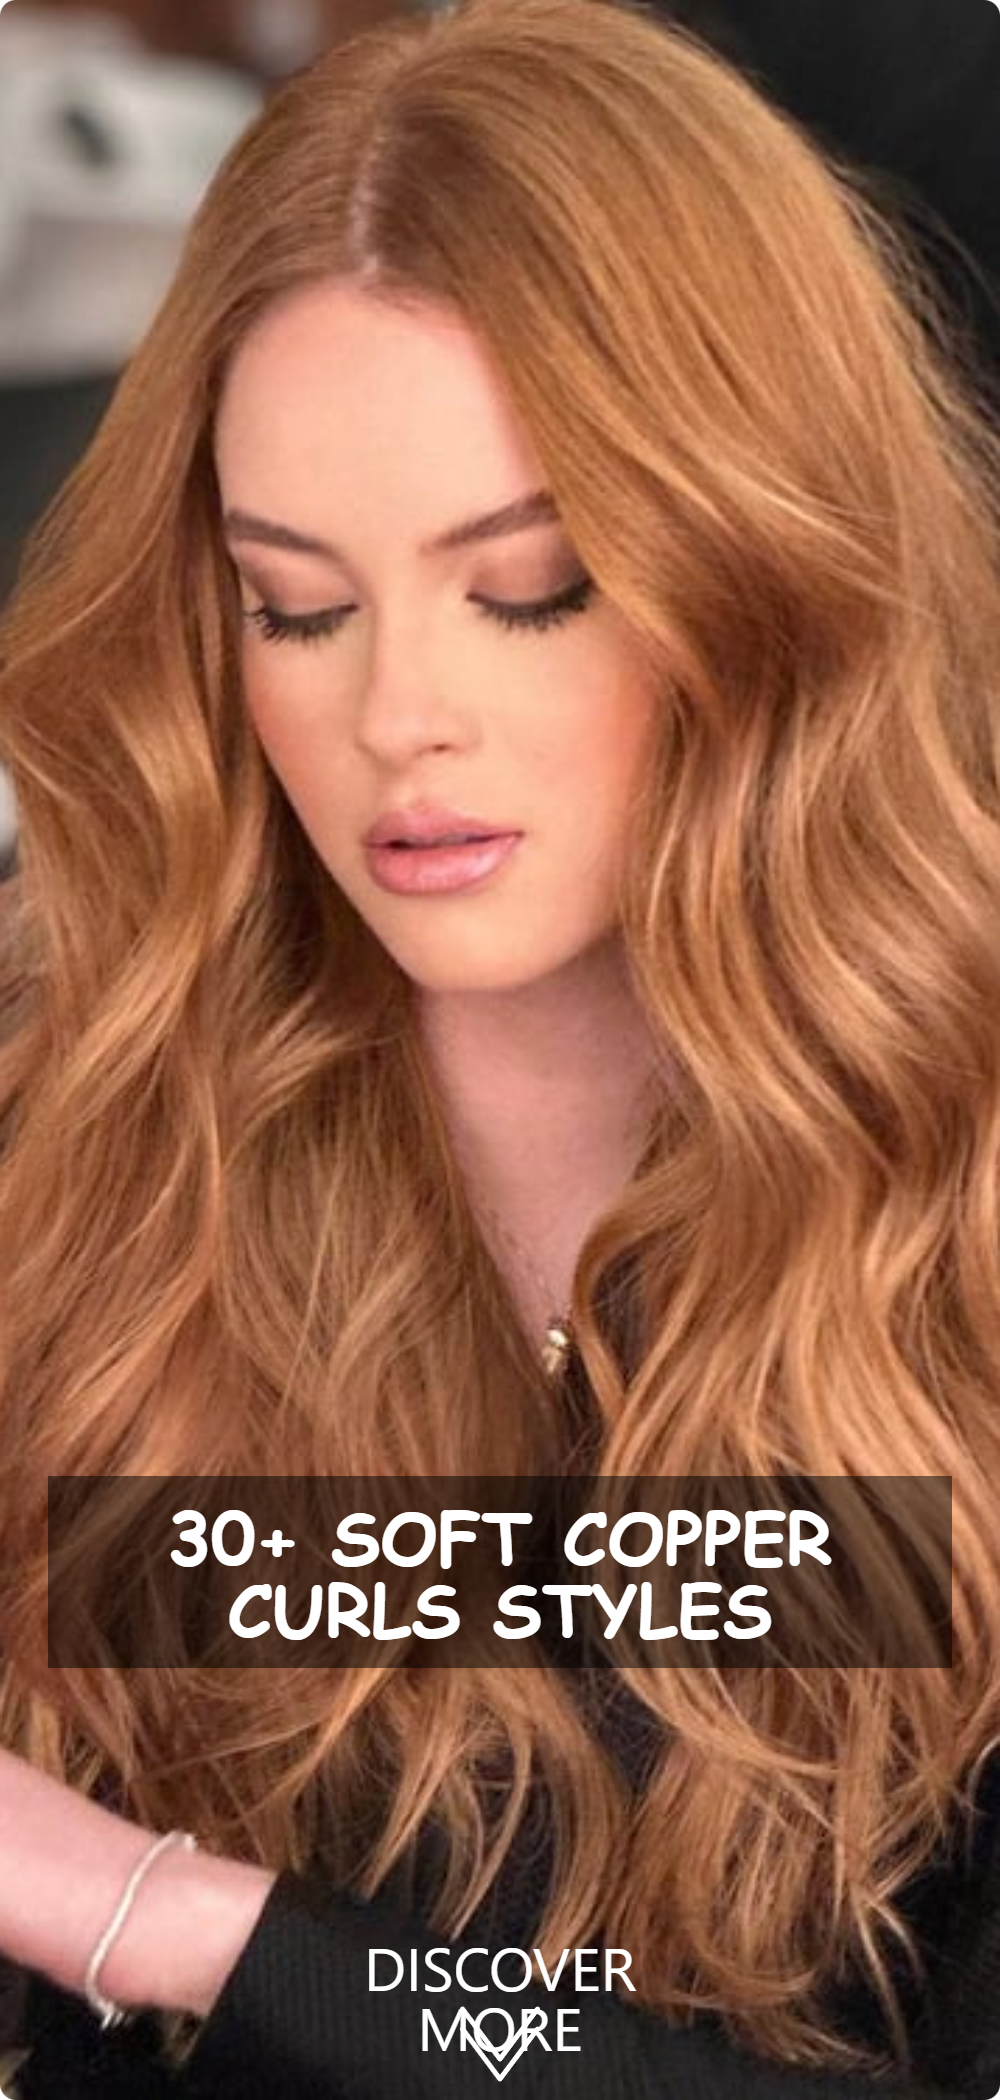 Soft Copper Curls